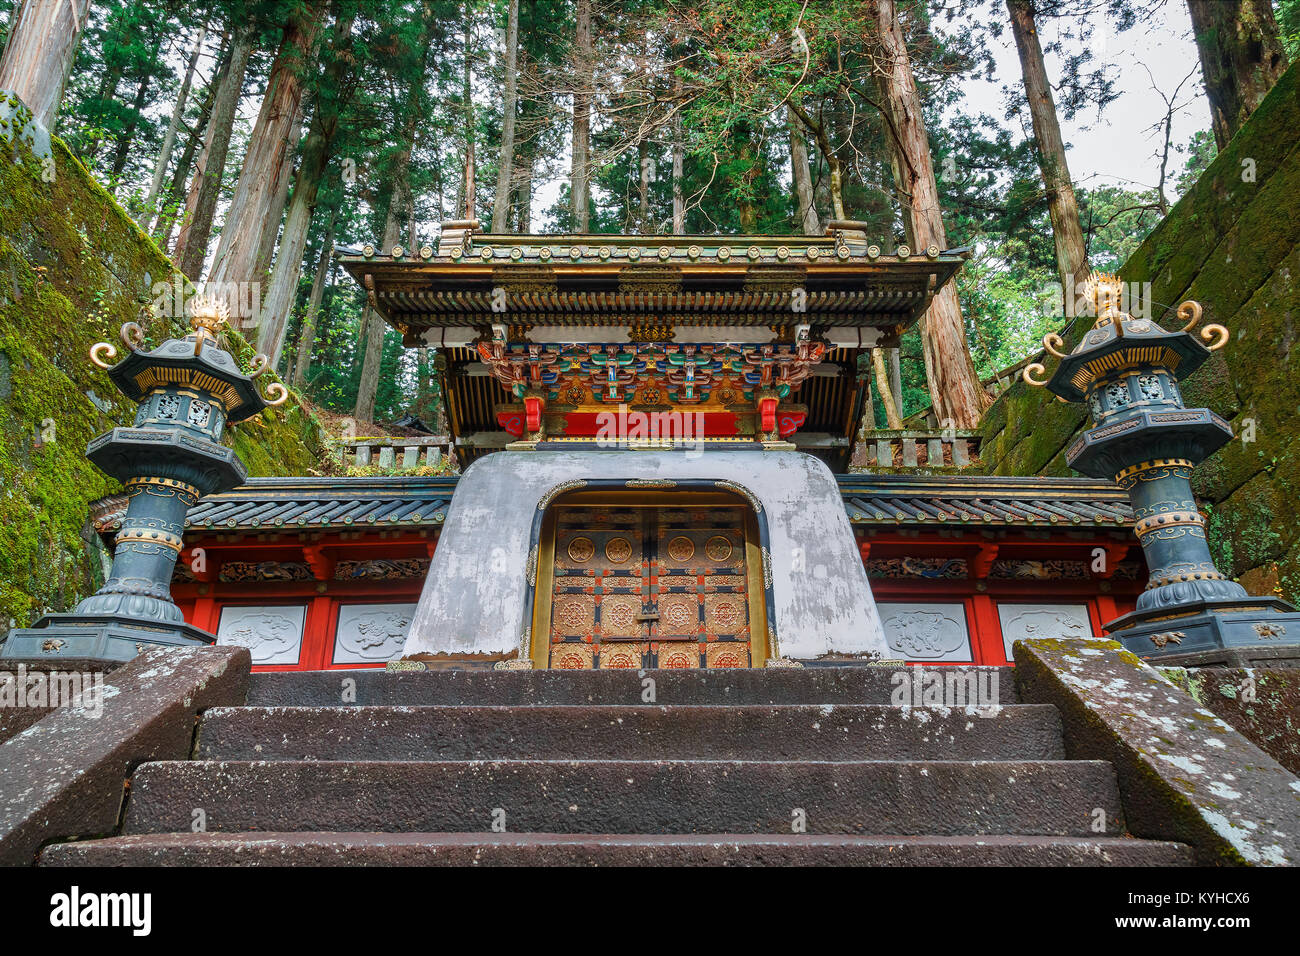 Taiyuinbyo - das Mausoleum des Shoguns Tokugawa Iemitsu NIKKO, Japan - 17. NOVEMBER 2015: Taiyuinbyo - das Mausoleum des Shoguns Tokugawa Iemitsu, der gr Stockfoto